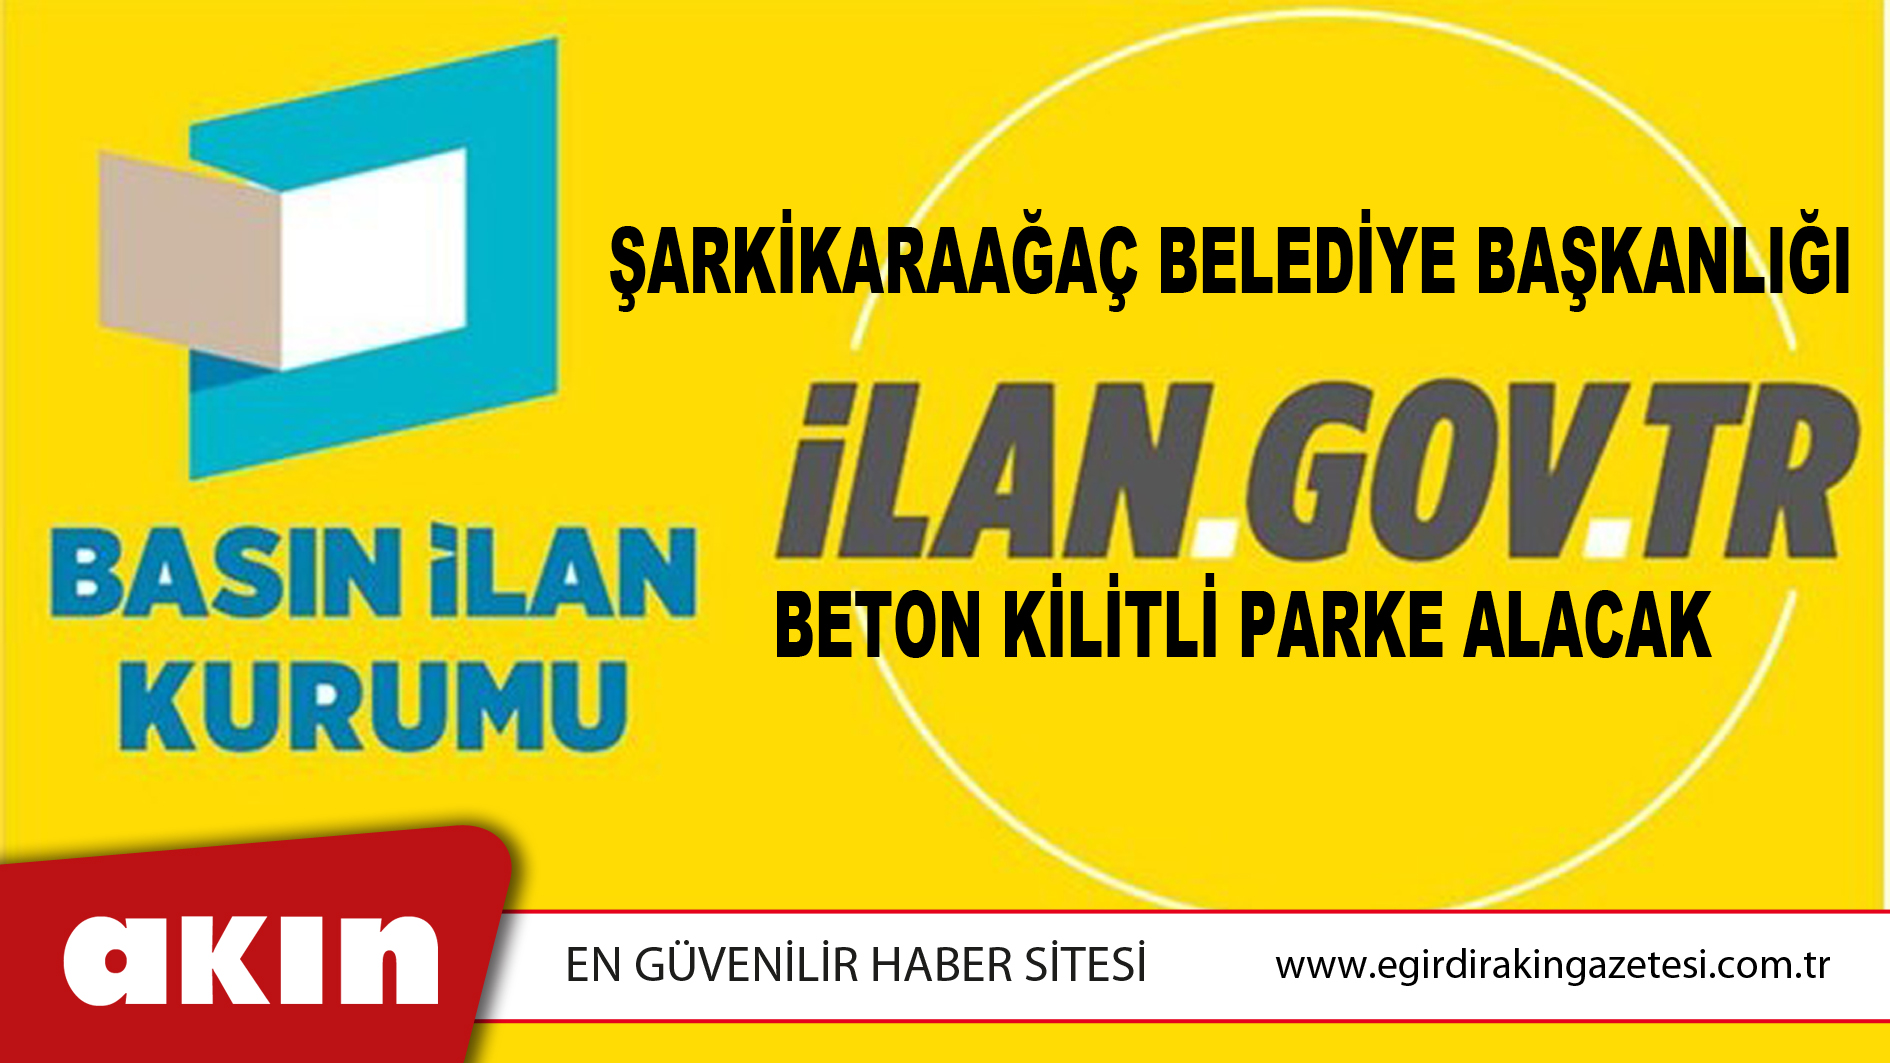 Şarkikaraağaç Belediye Başkanlığı Beton Kilitli Parke Alacak